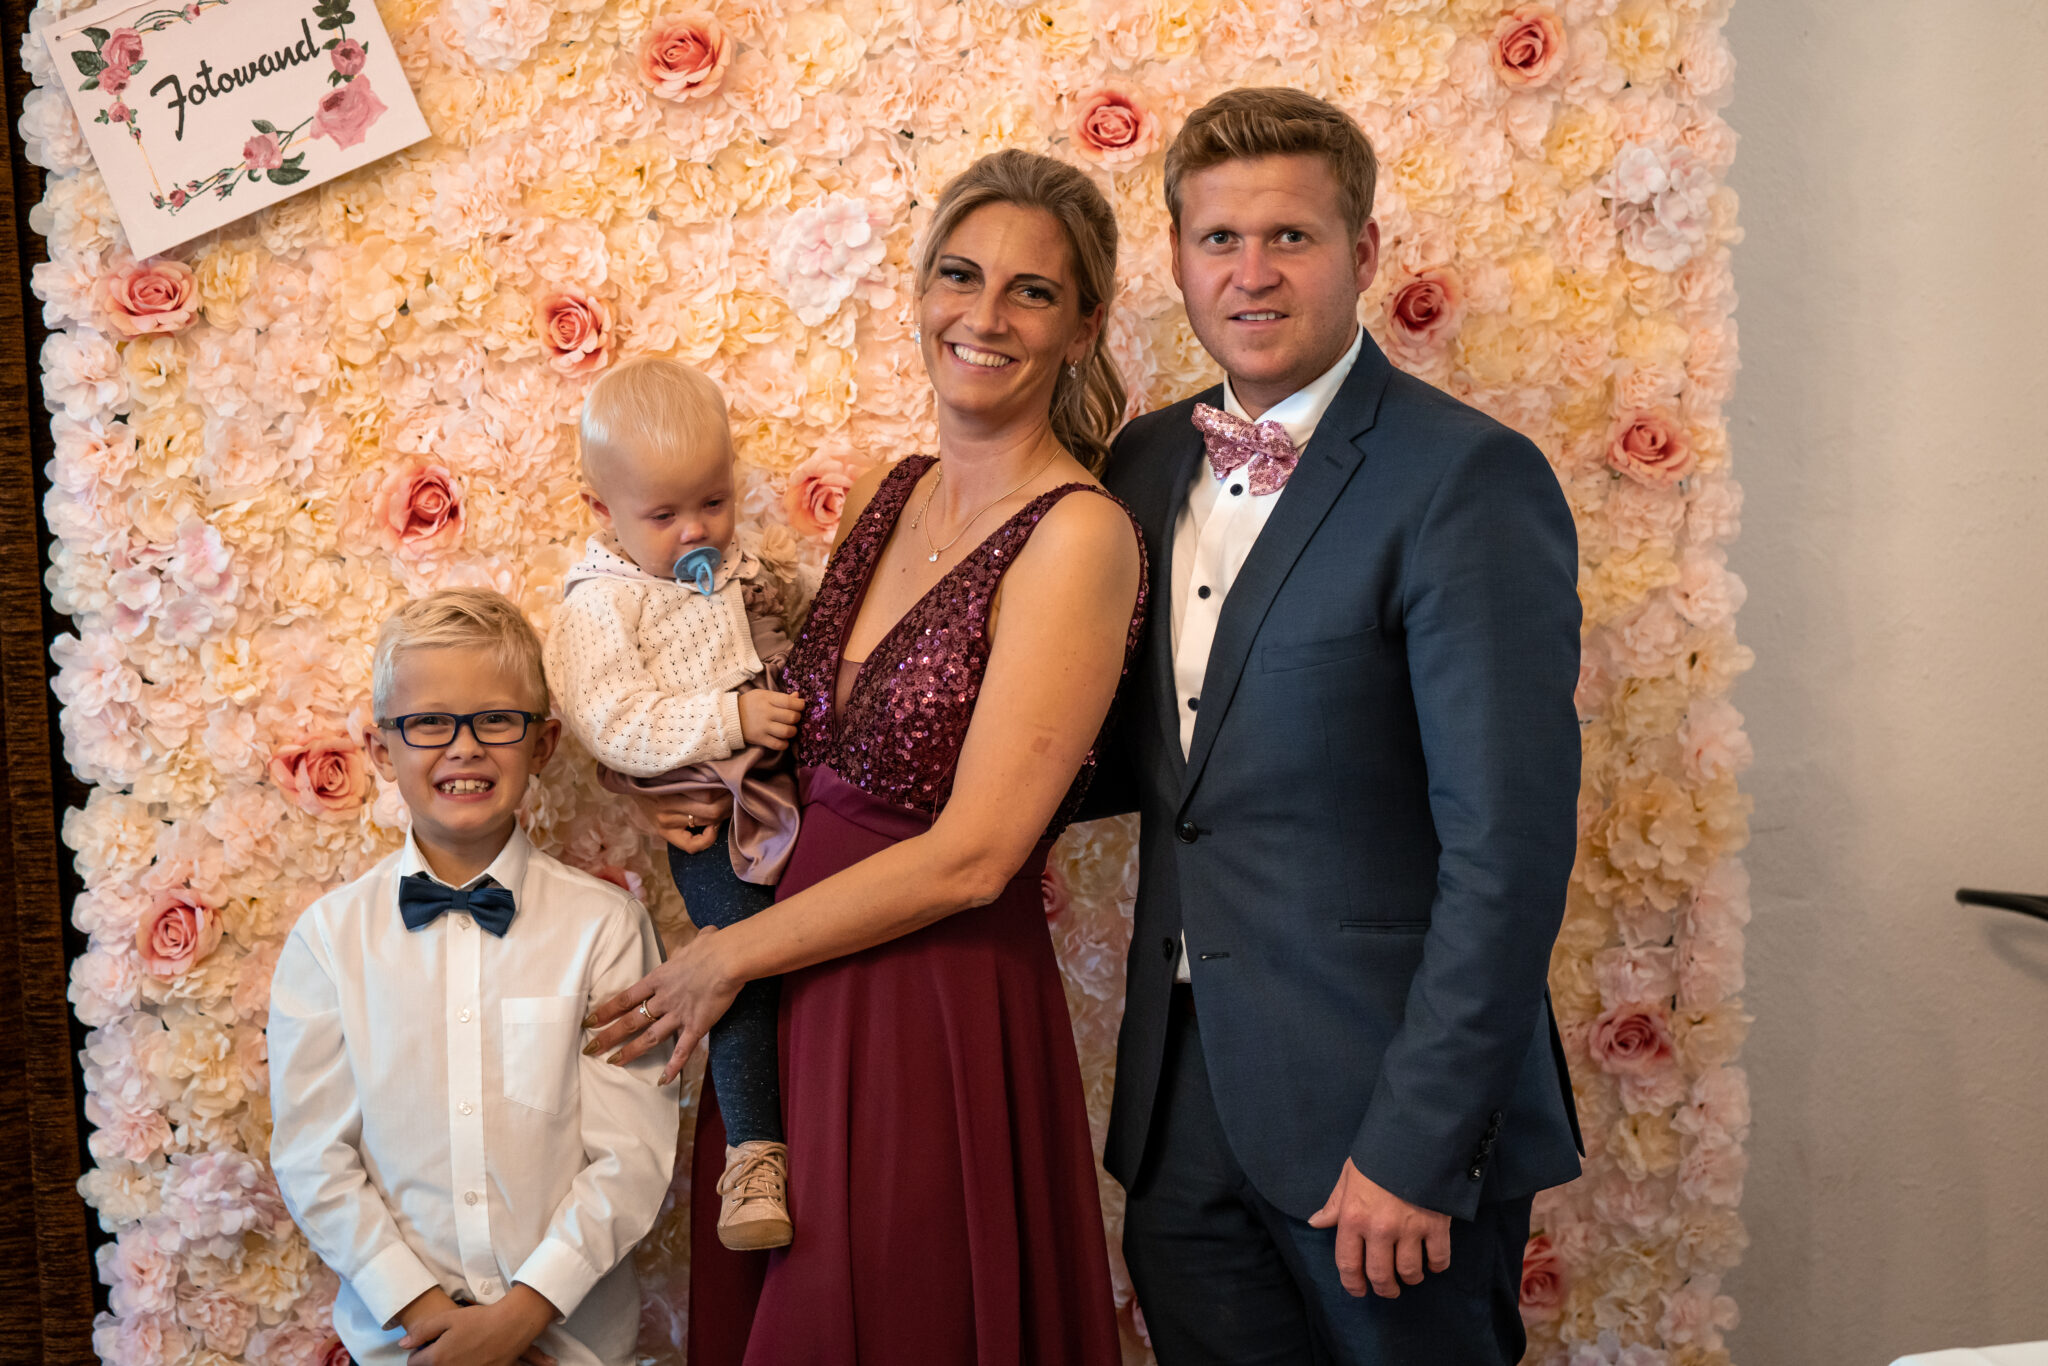 Familienfoto vor Fotowand in Hochzeitslocation